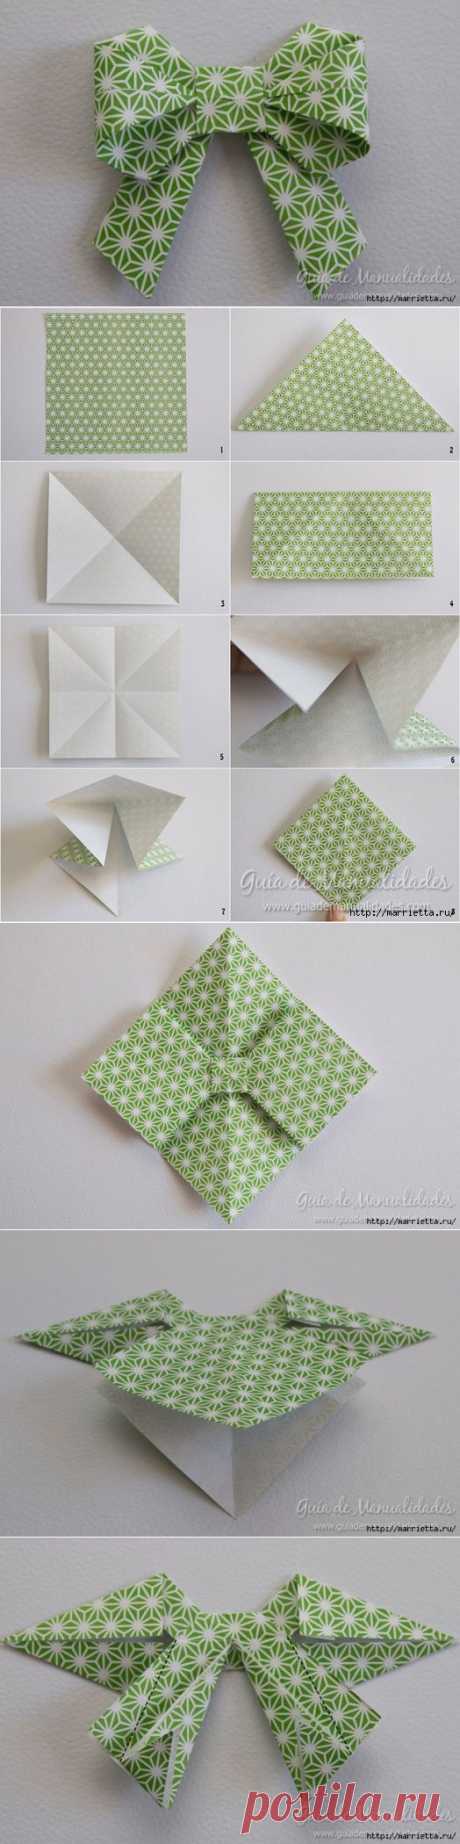 Как сложить красивый бант из бумаги в технике оригами